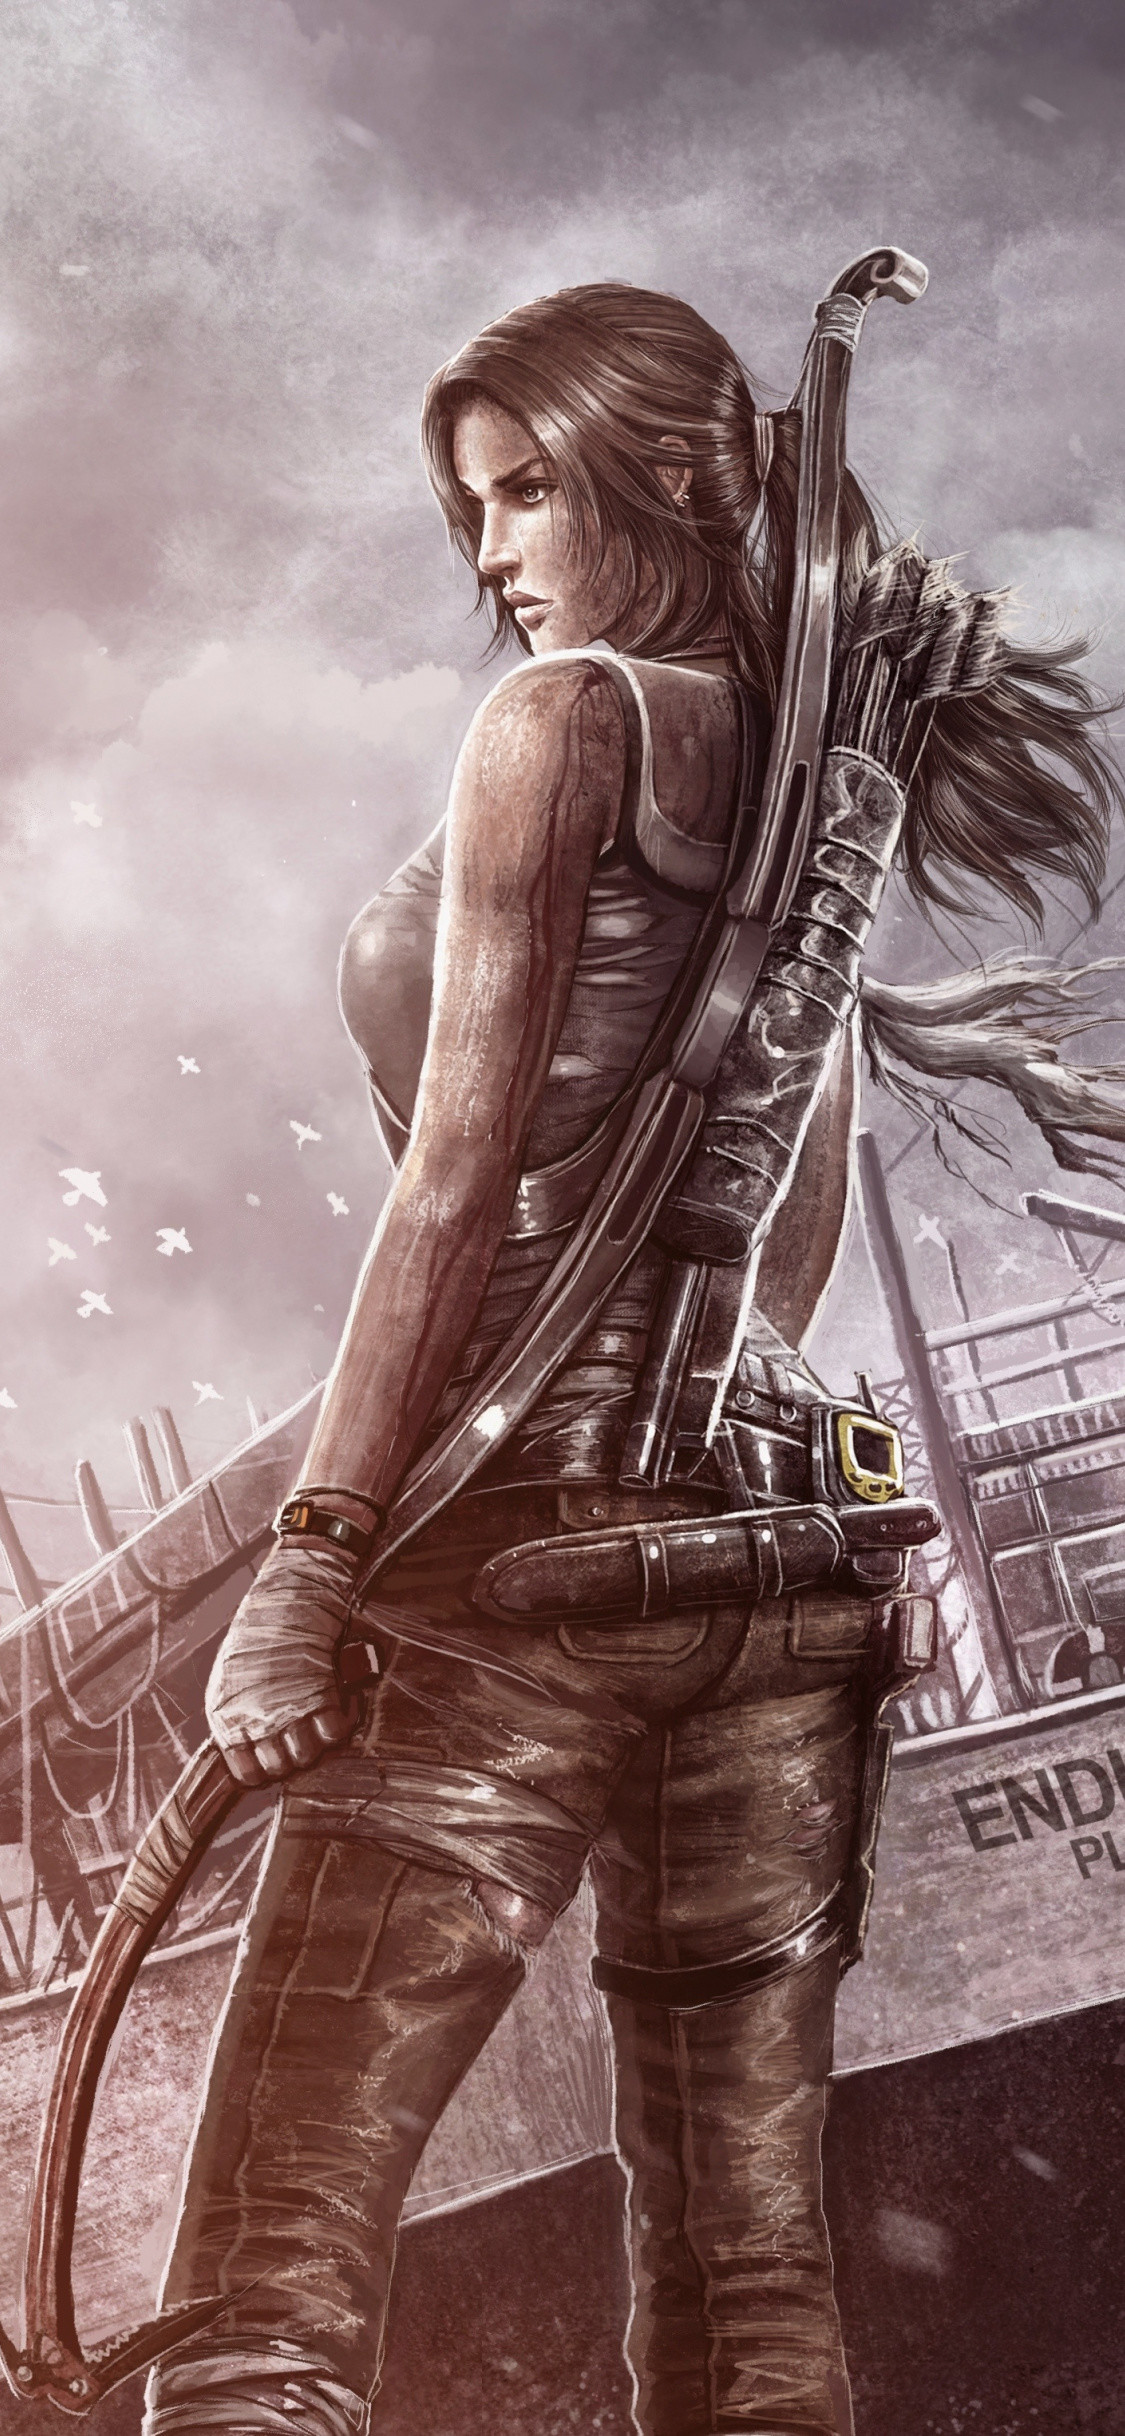 1125x2436 Tomb Raider, archer, Lara Croft, video game, fan art,  wallpaper